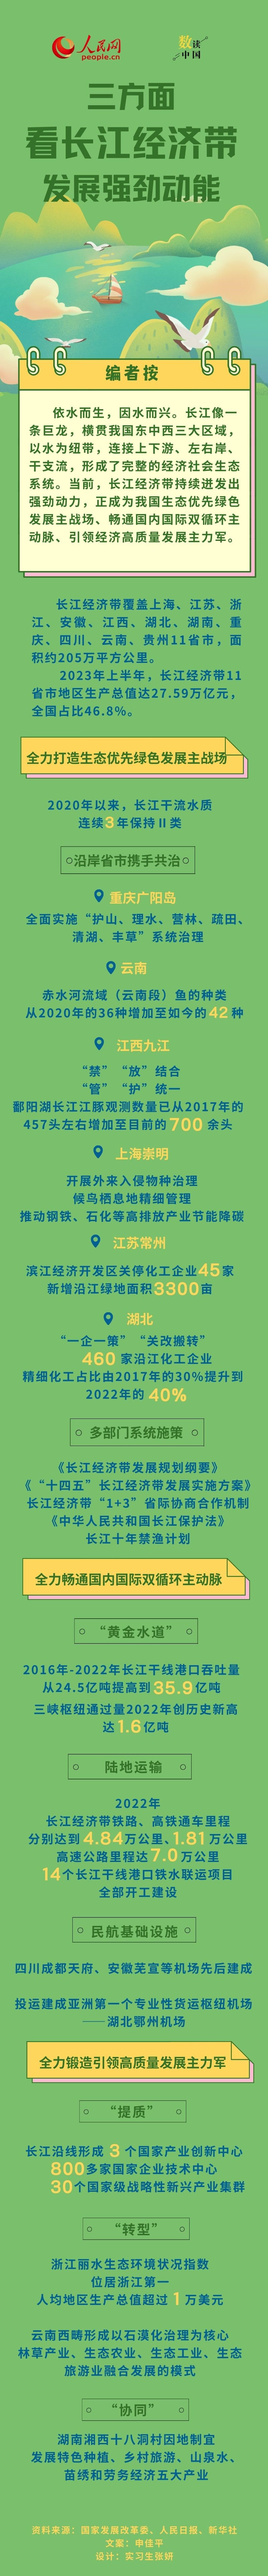 数读中国 | 三方面看长江经济带发展强劲动能